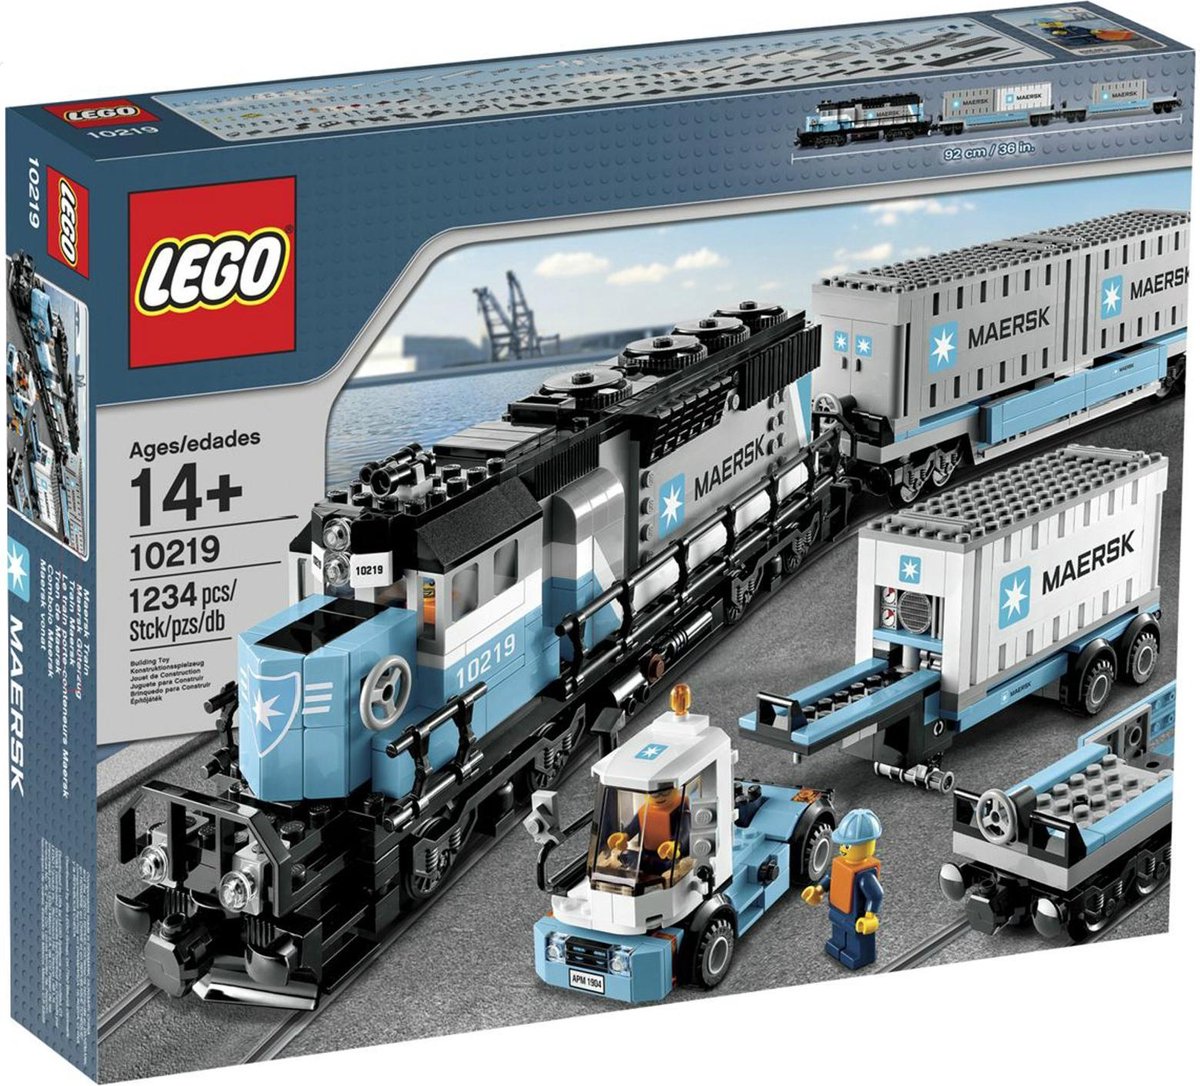 Keer terug Meer Tranen Vergelijk LEGO Maersk Trein - 10219 | Nu Korting tot wel 0%!